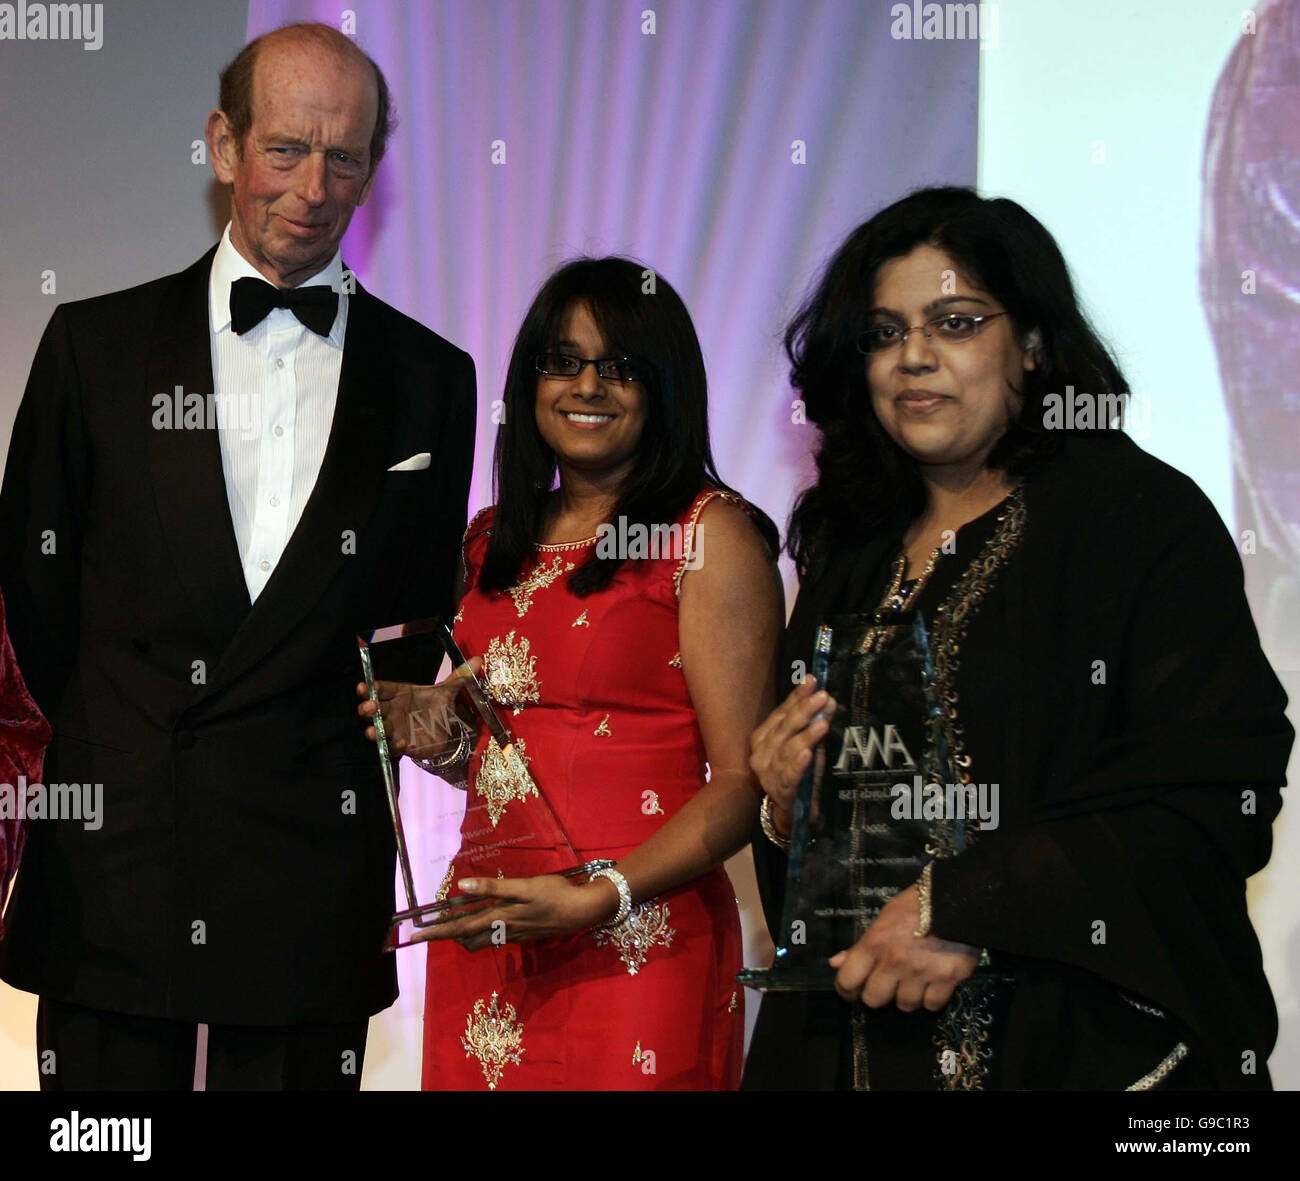 HRH il Duca di Kent presenta Sumerah Ahmad, 32, (centro) e Humerah Khan, 34, co-fondatori e direttori del club Asia radio, Essex, con il Premio Entrepreneur of the Year ai premi Asian Women of Achievement a Londra. Foto Stock